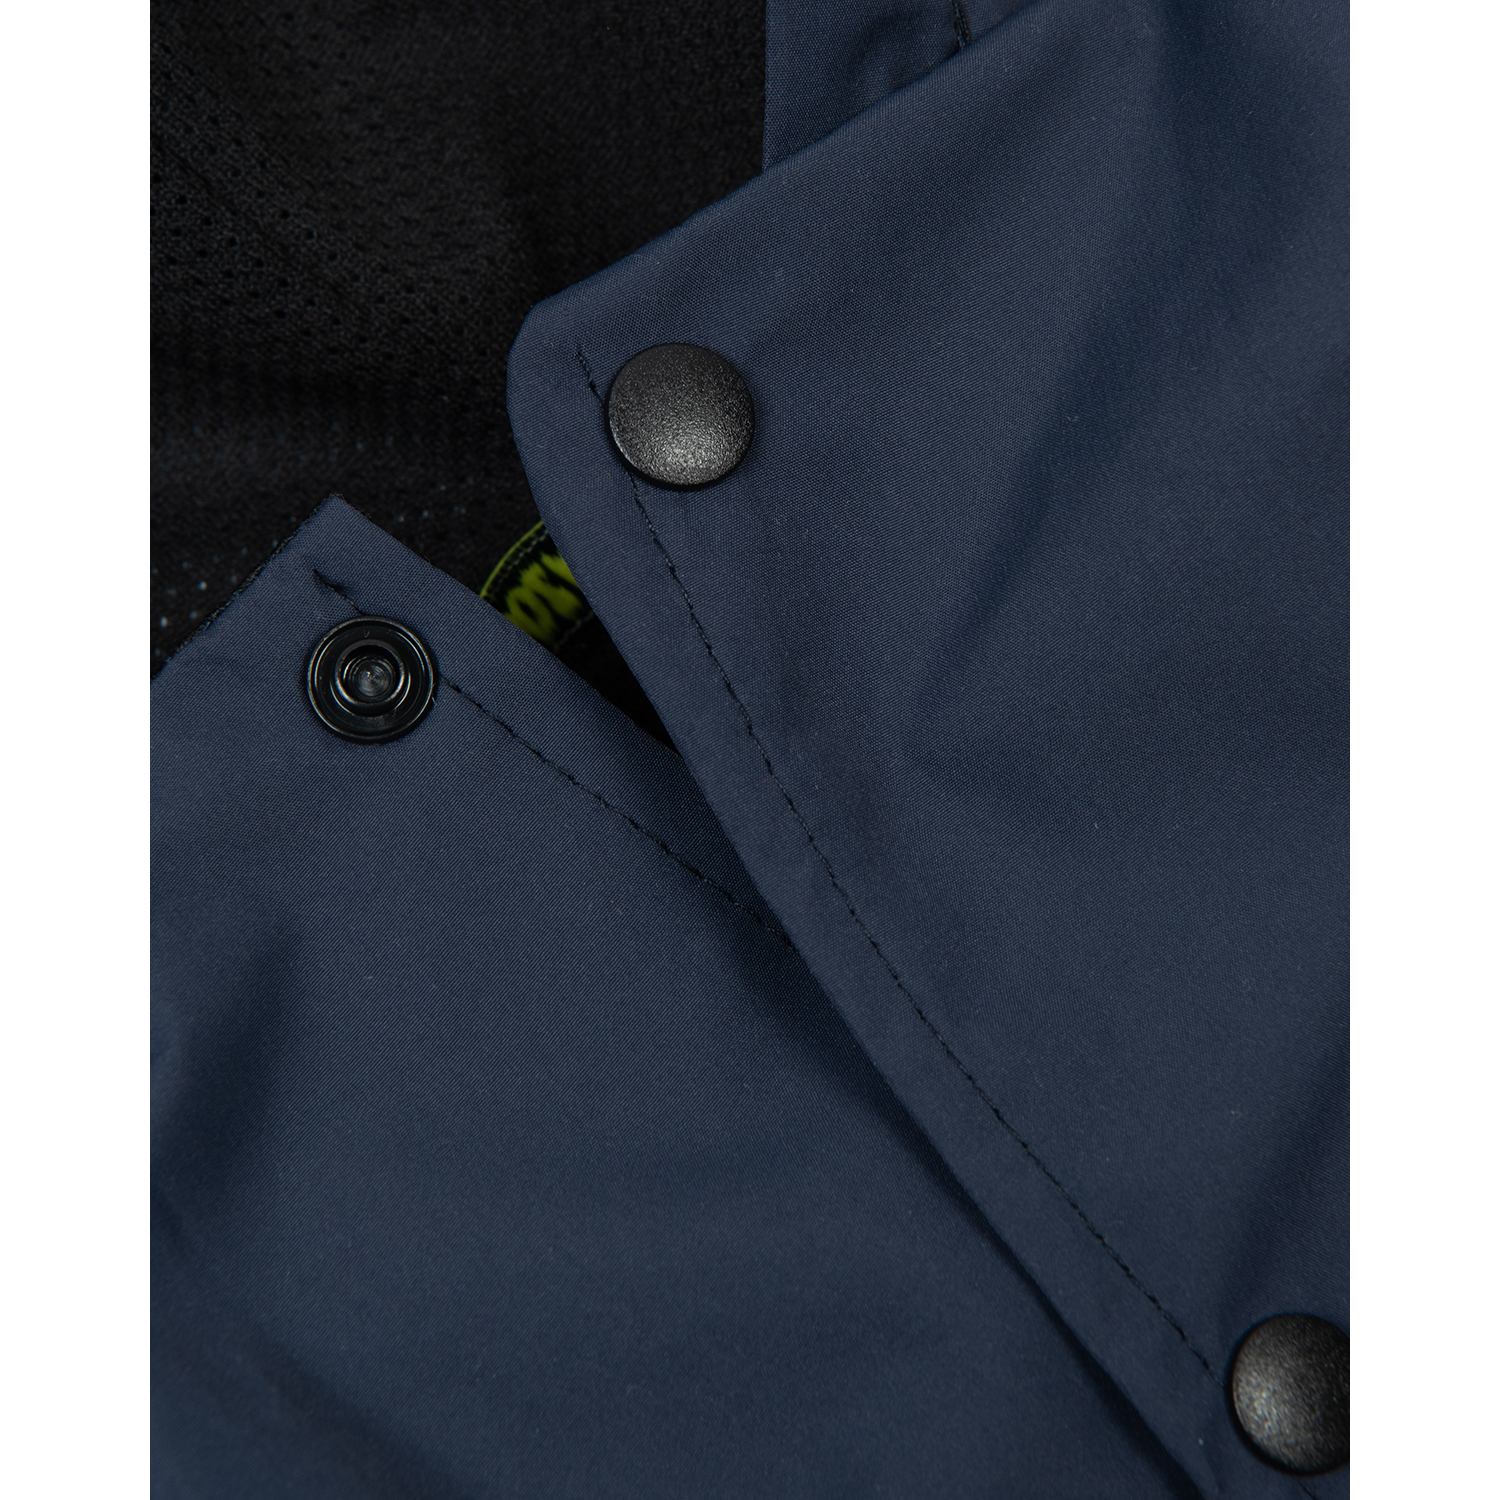 Куртка-дождевик для собак Зоозавр тёмно-синяя 55 - фото 4